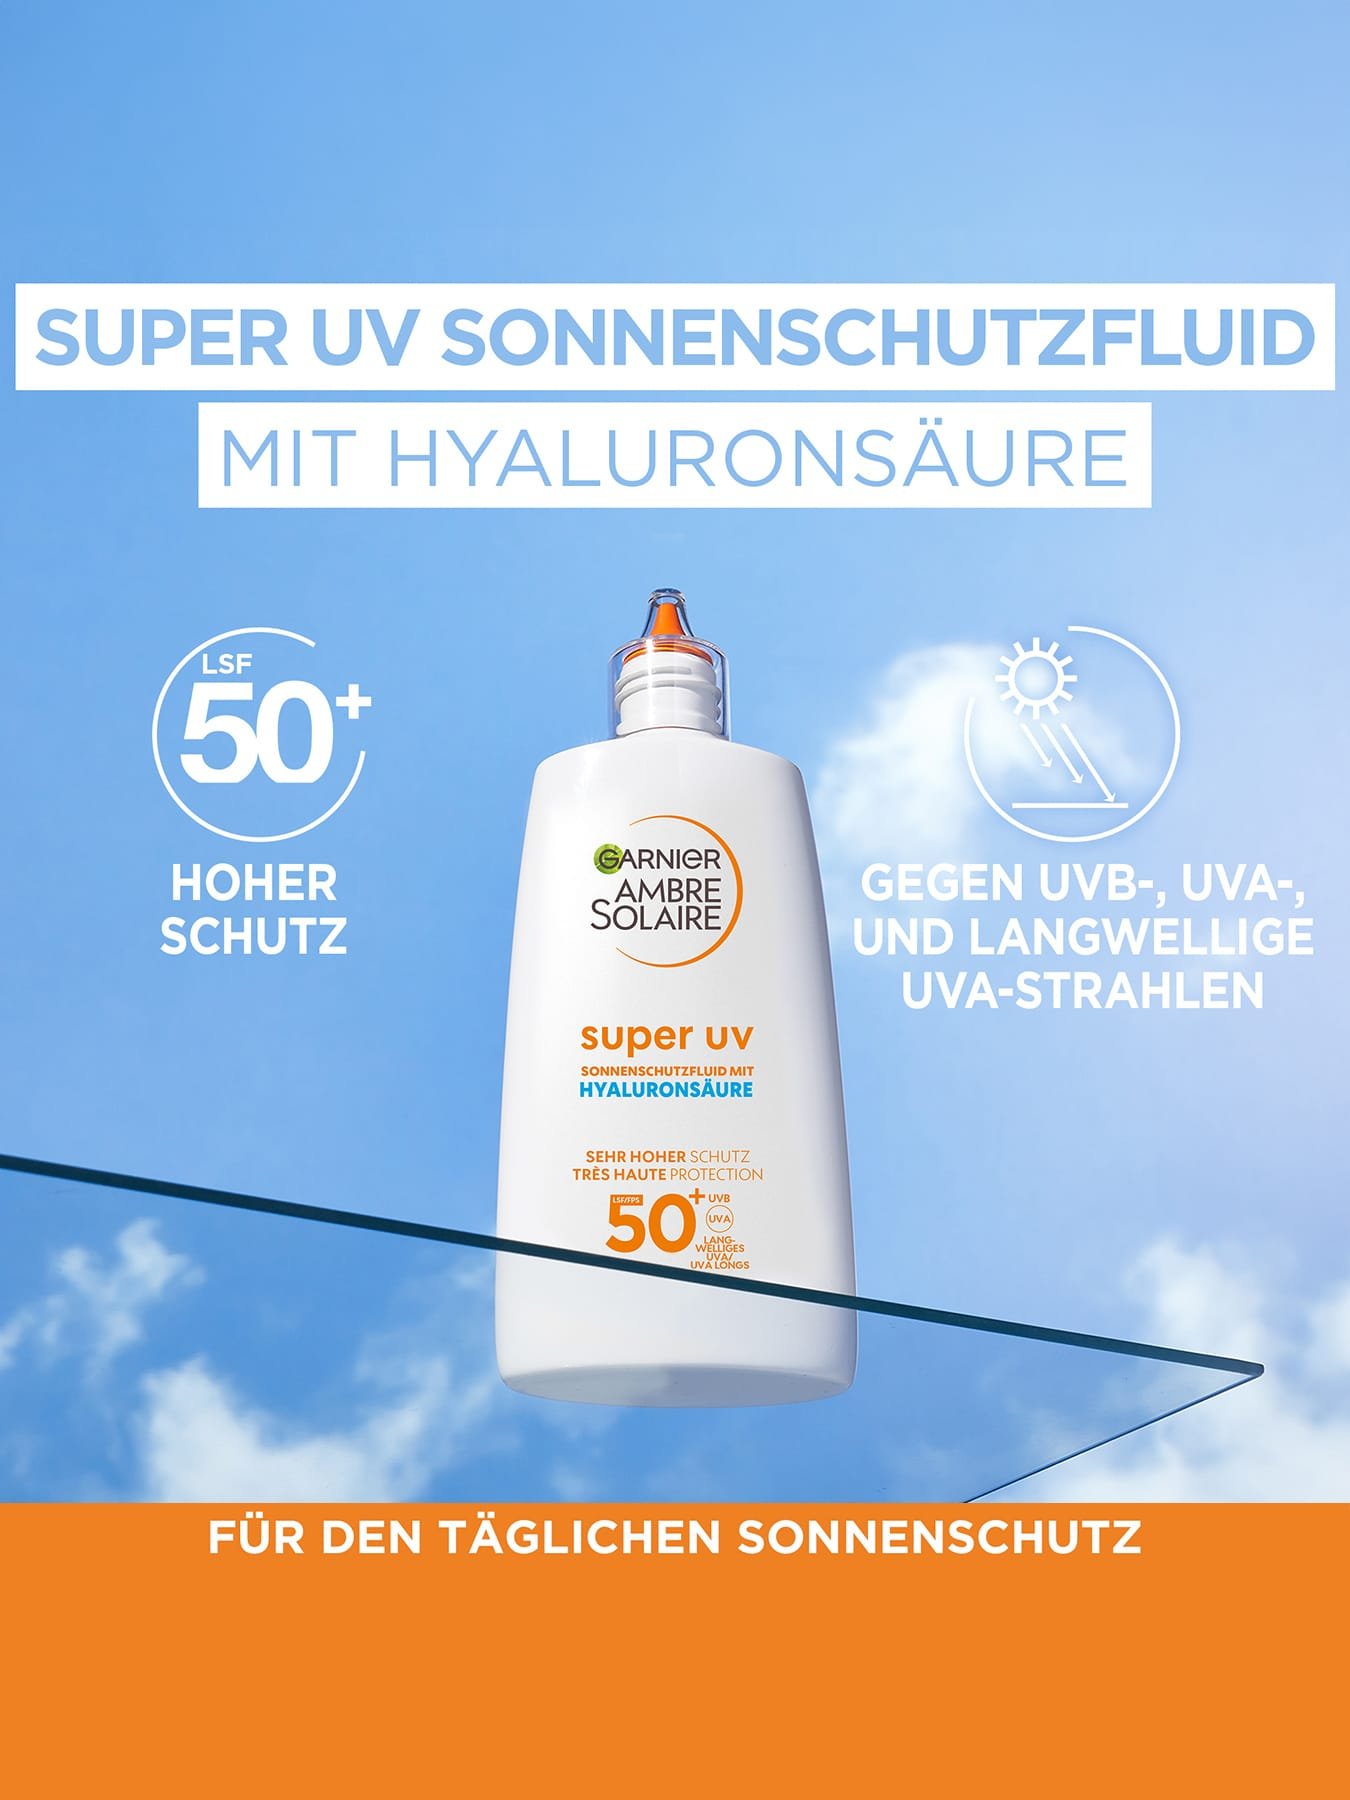 Super UV Sonnenschutz-Fluid - Produkt auf einer Glasplatte vor blauem Himmel